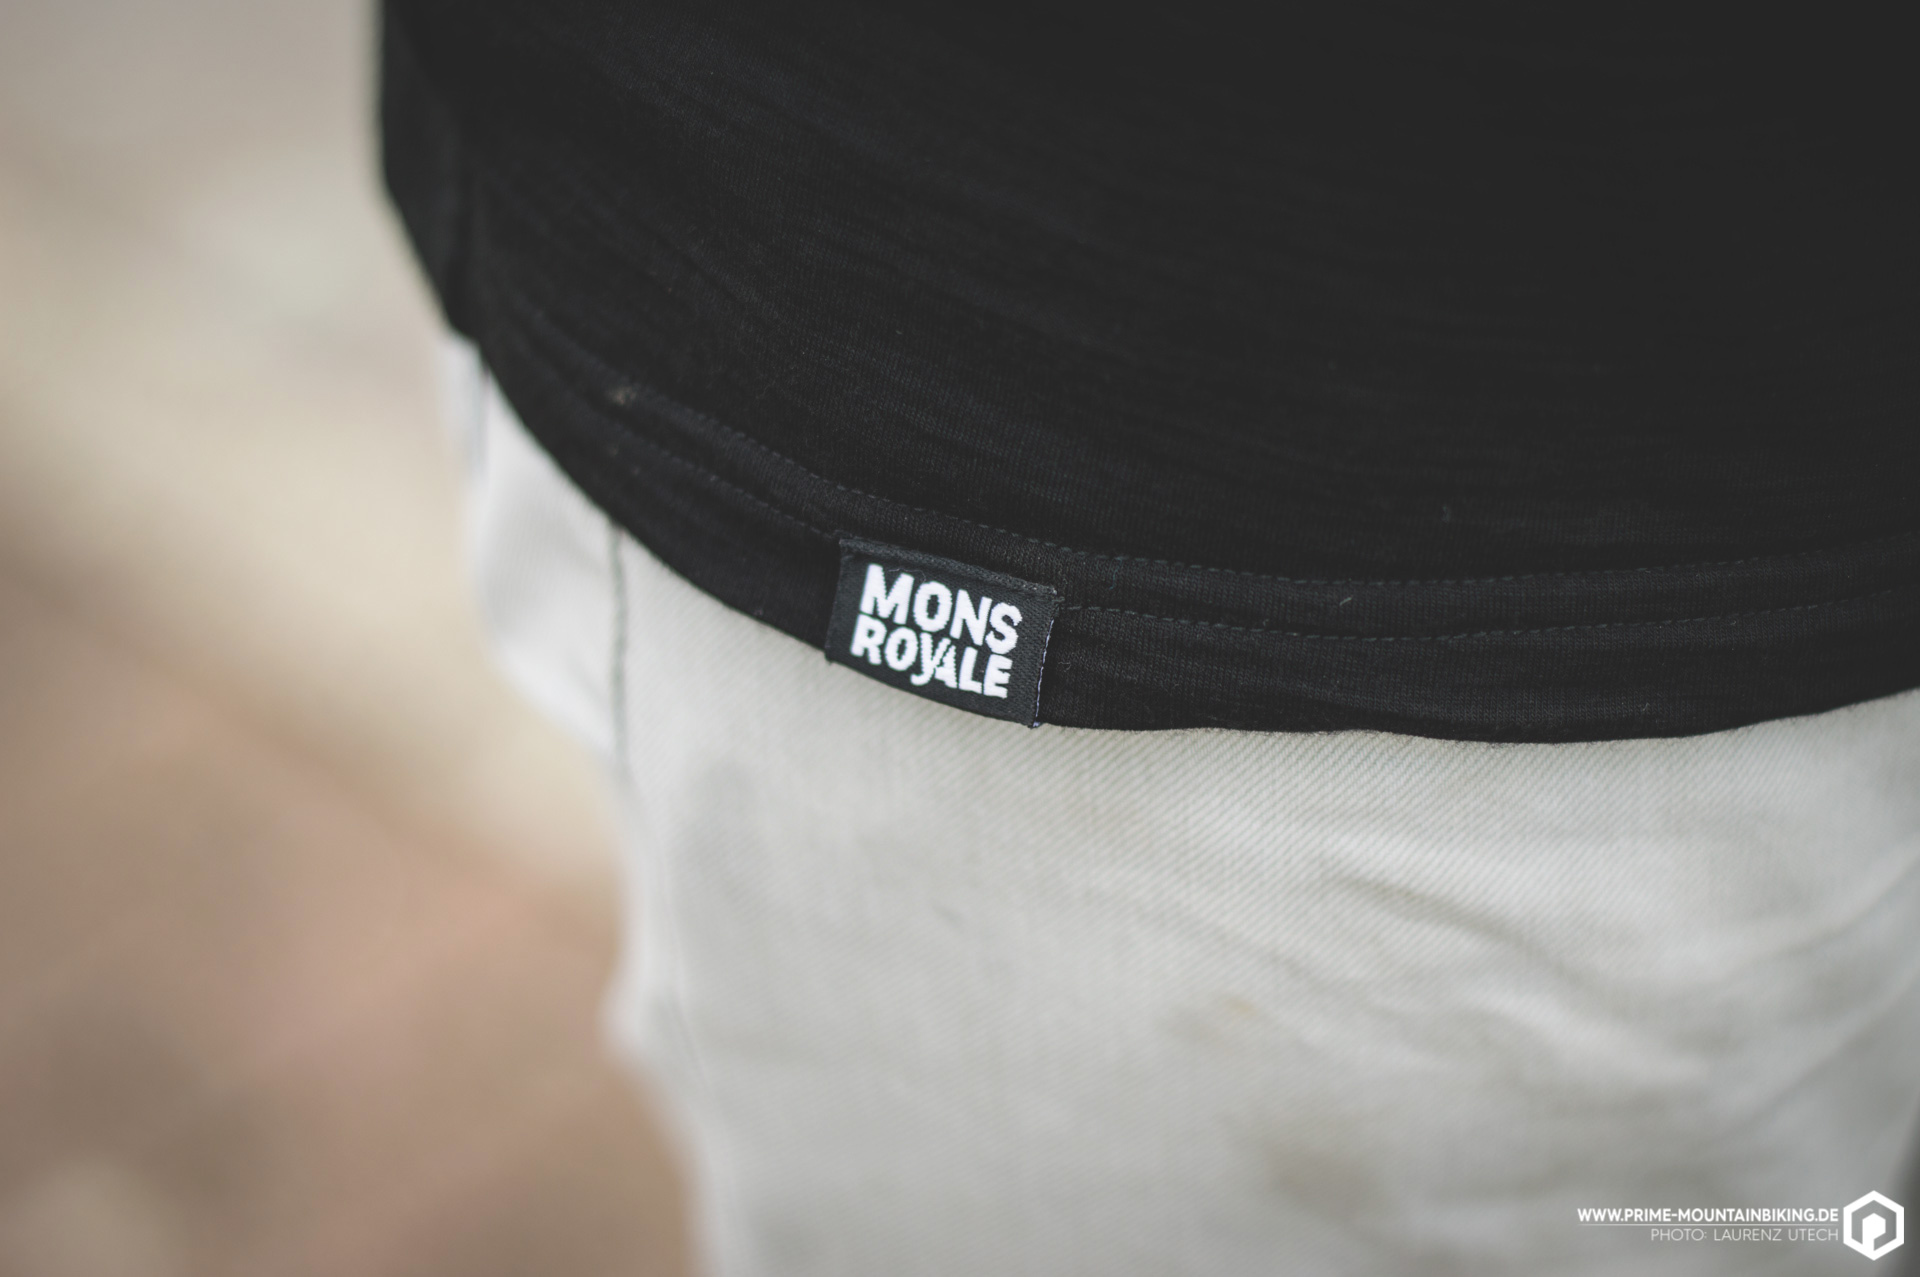 Mons Royale - die Merino Marke schlechthin kommt aus Neuseead und stellt vom Jersey bis zur Unterhose alles aus Merinofaser her.